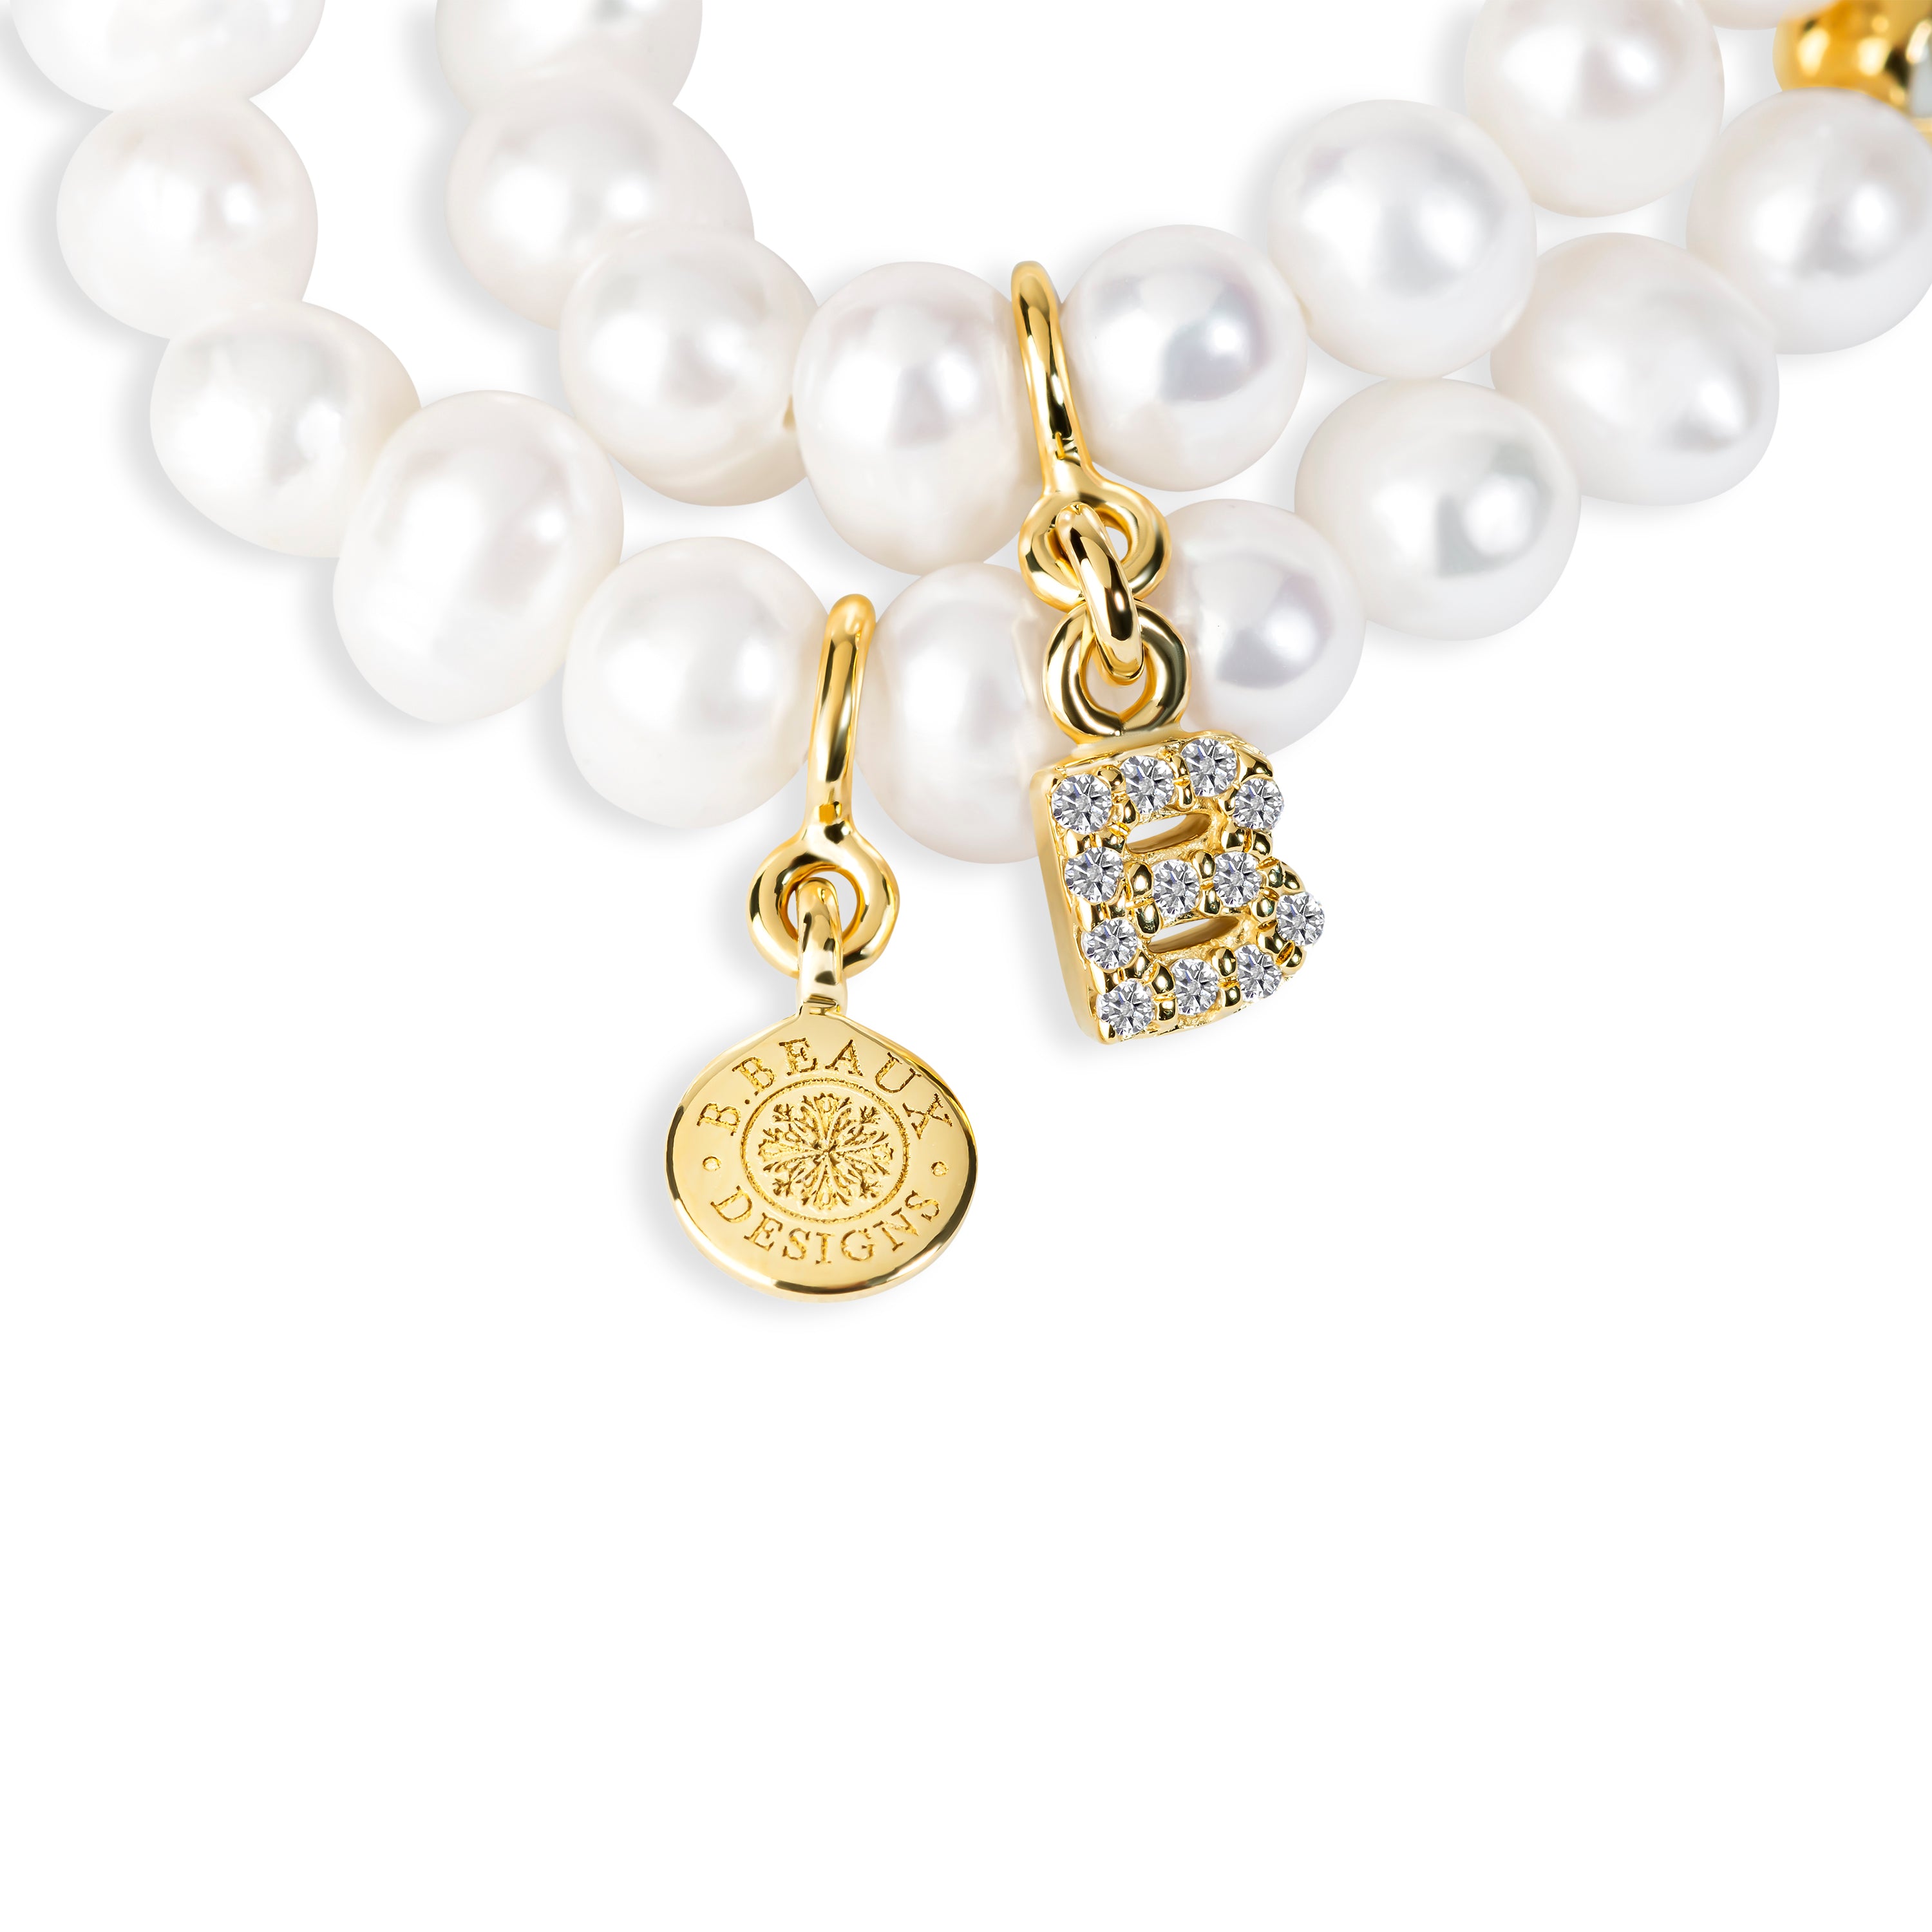 Karolina Gold Filled Bead Monogram Bracelet B382